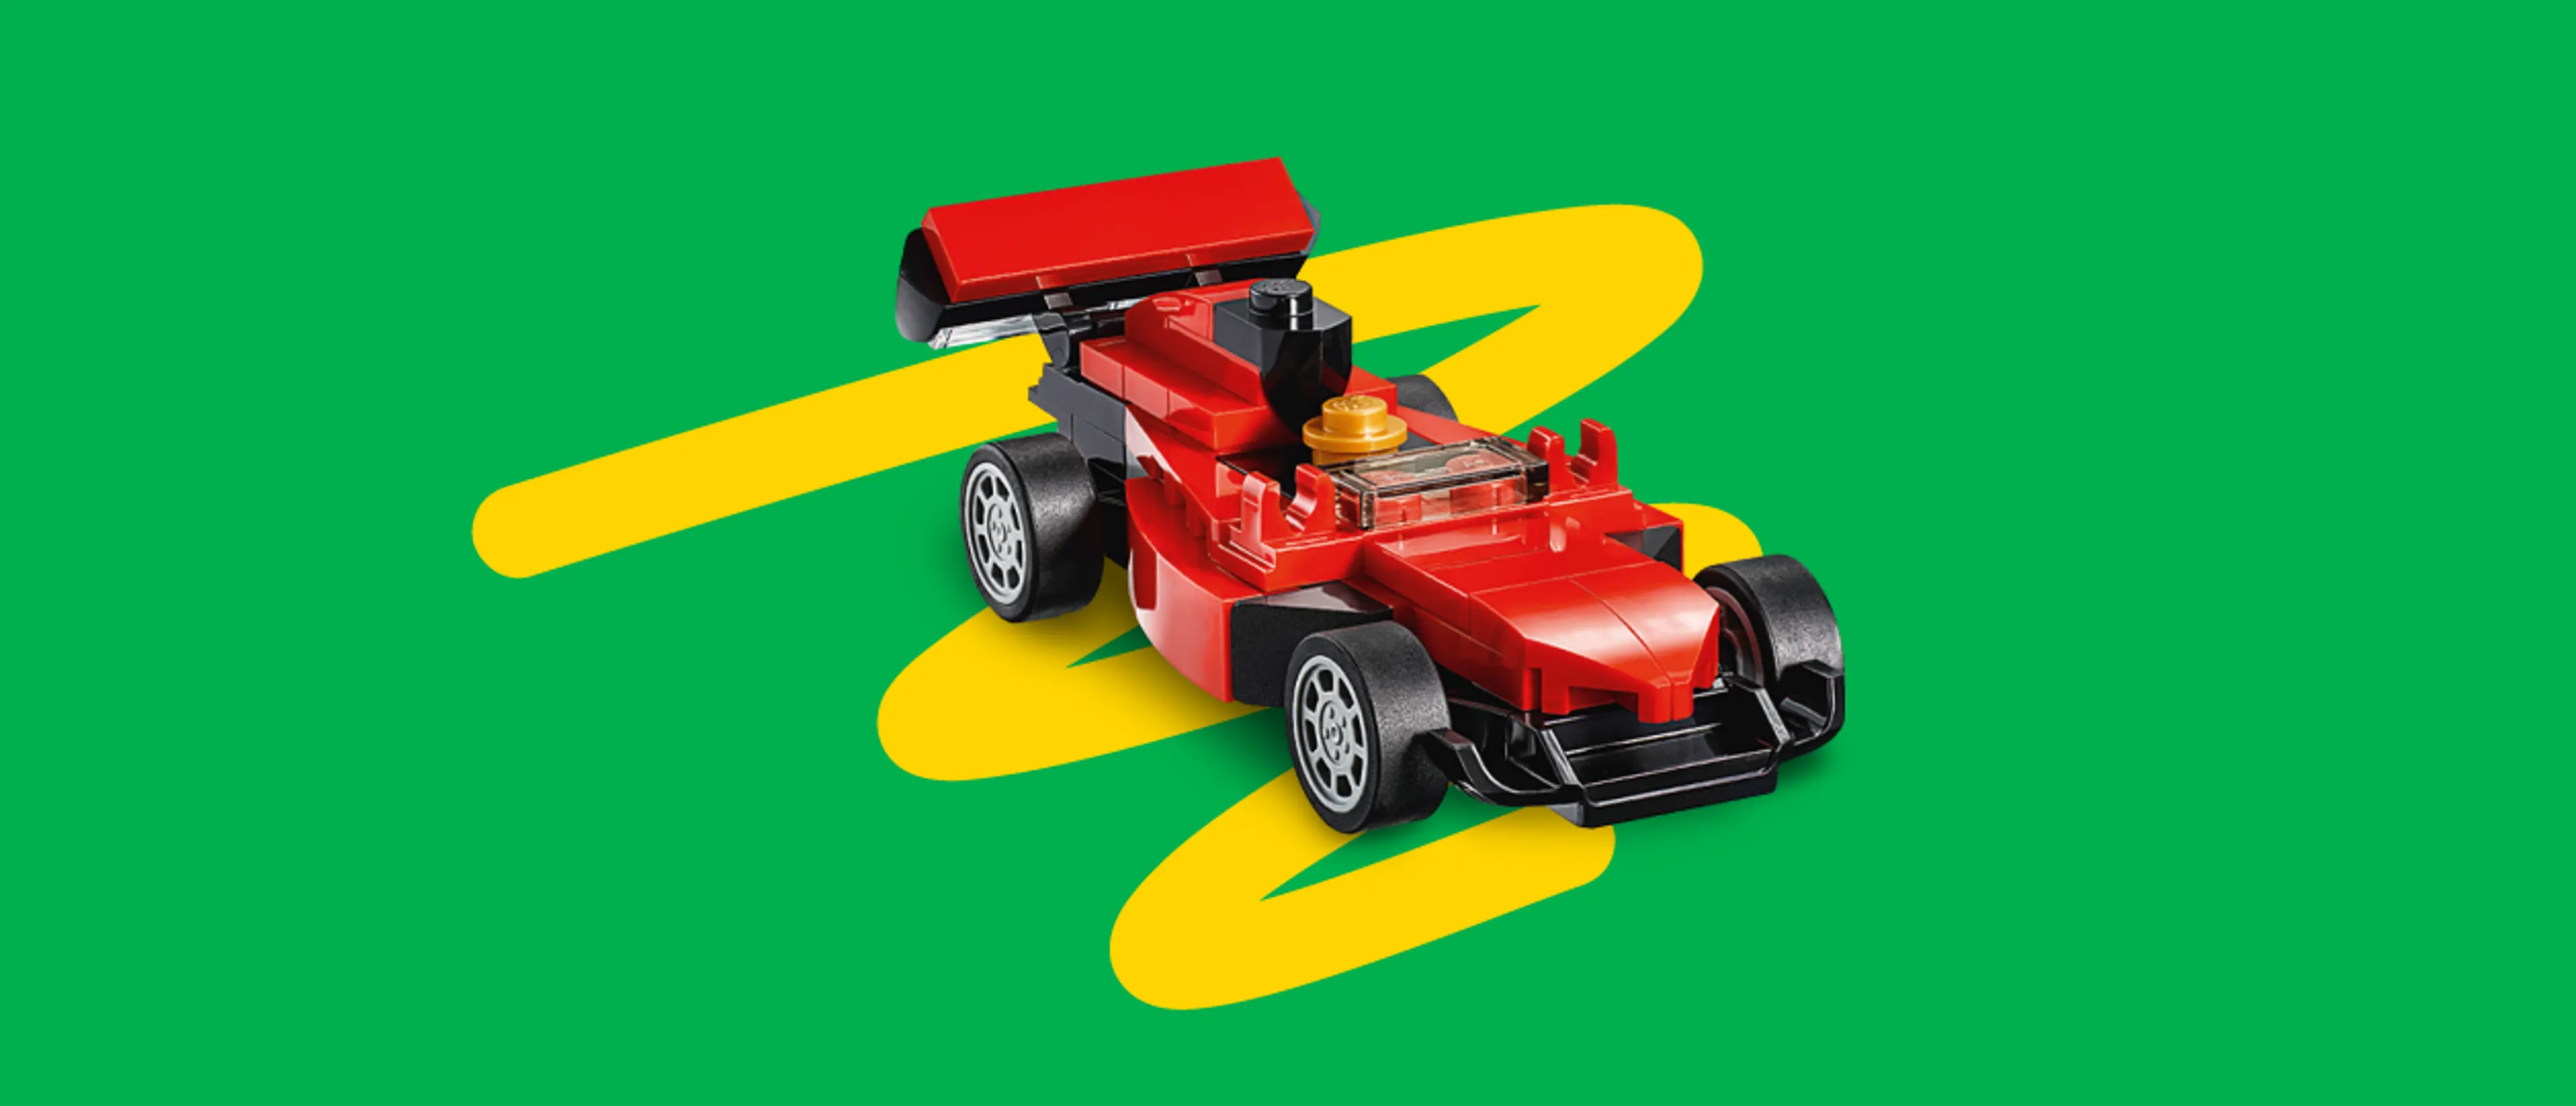 A LEGO Race Car